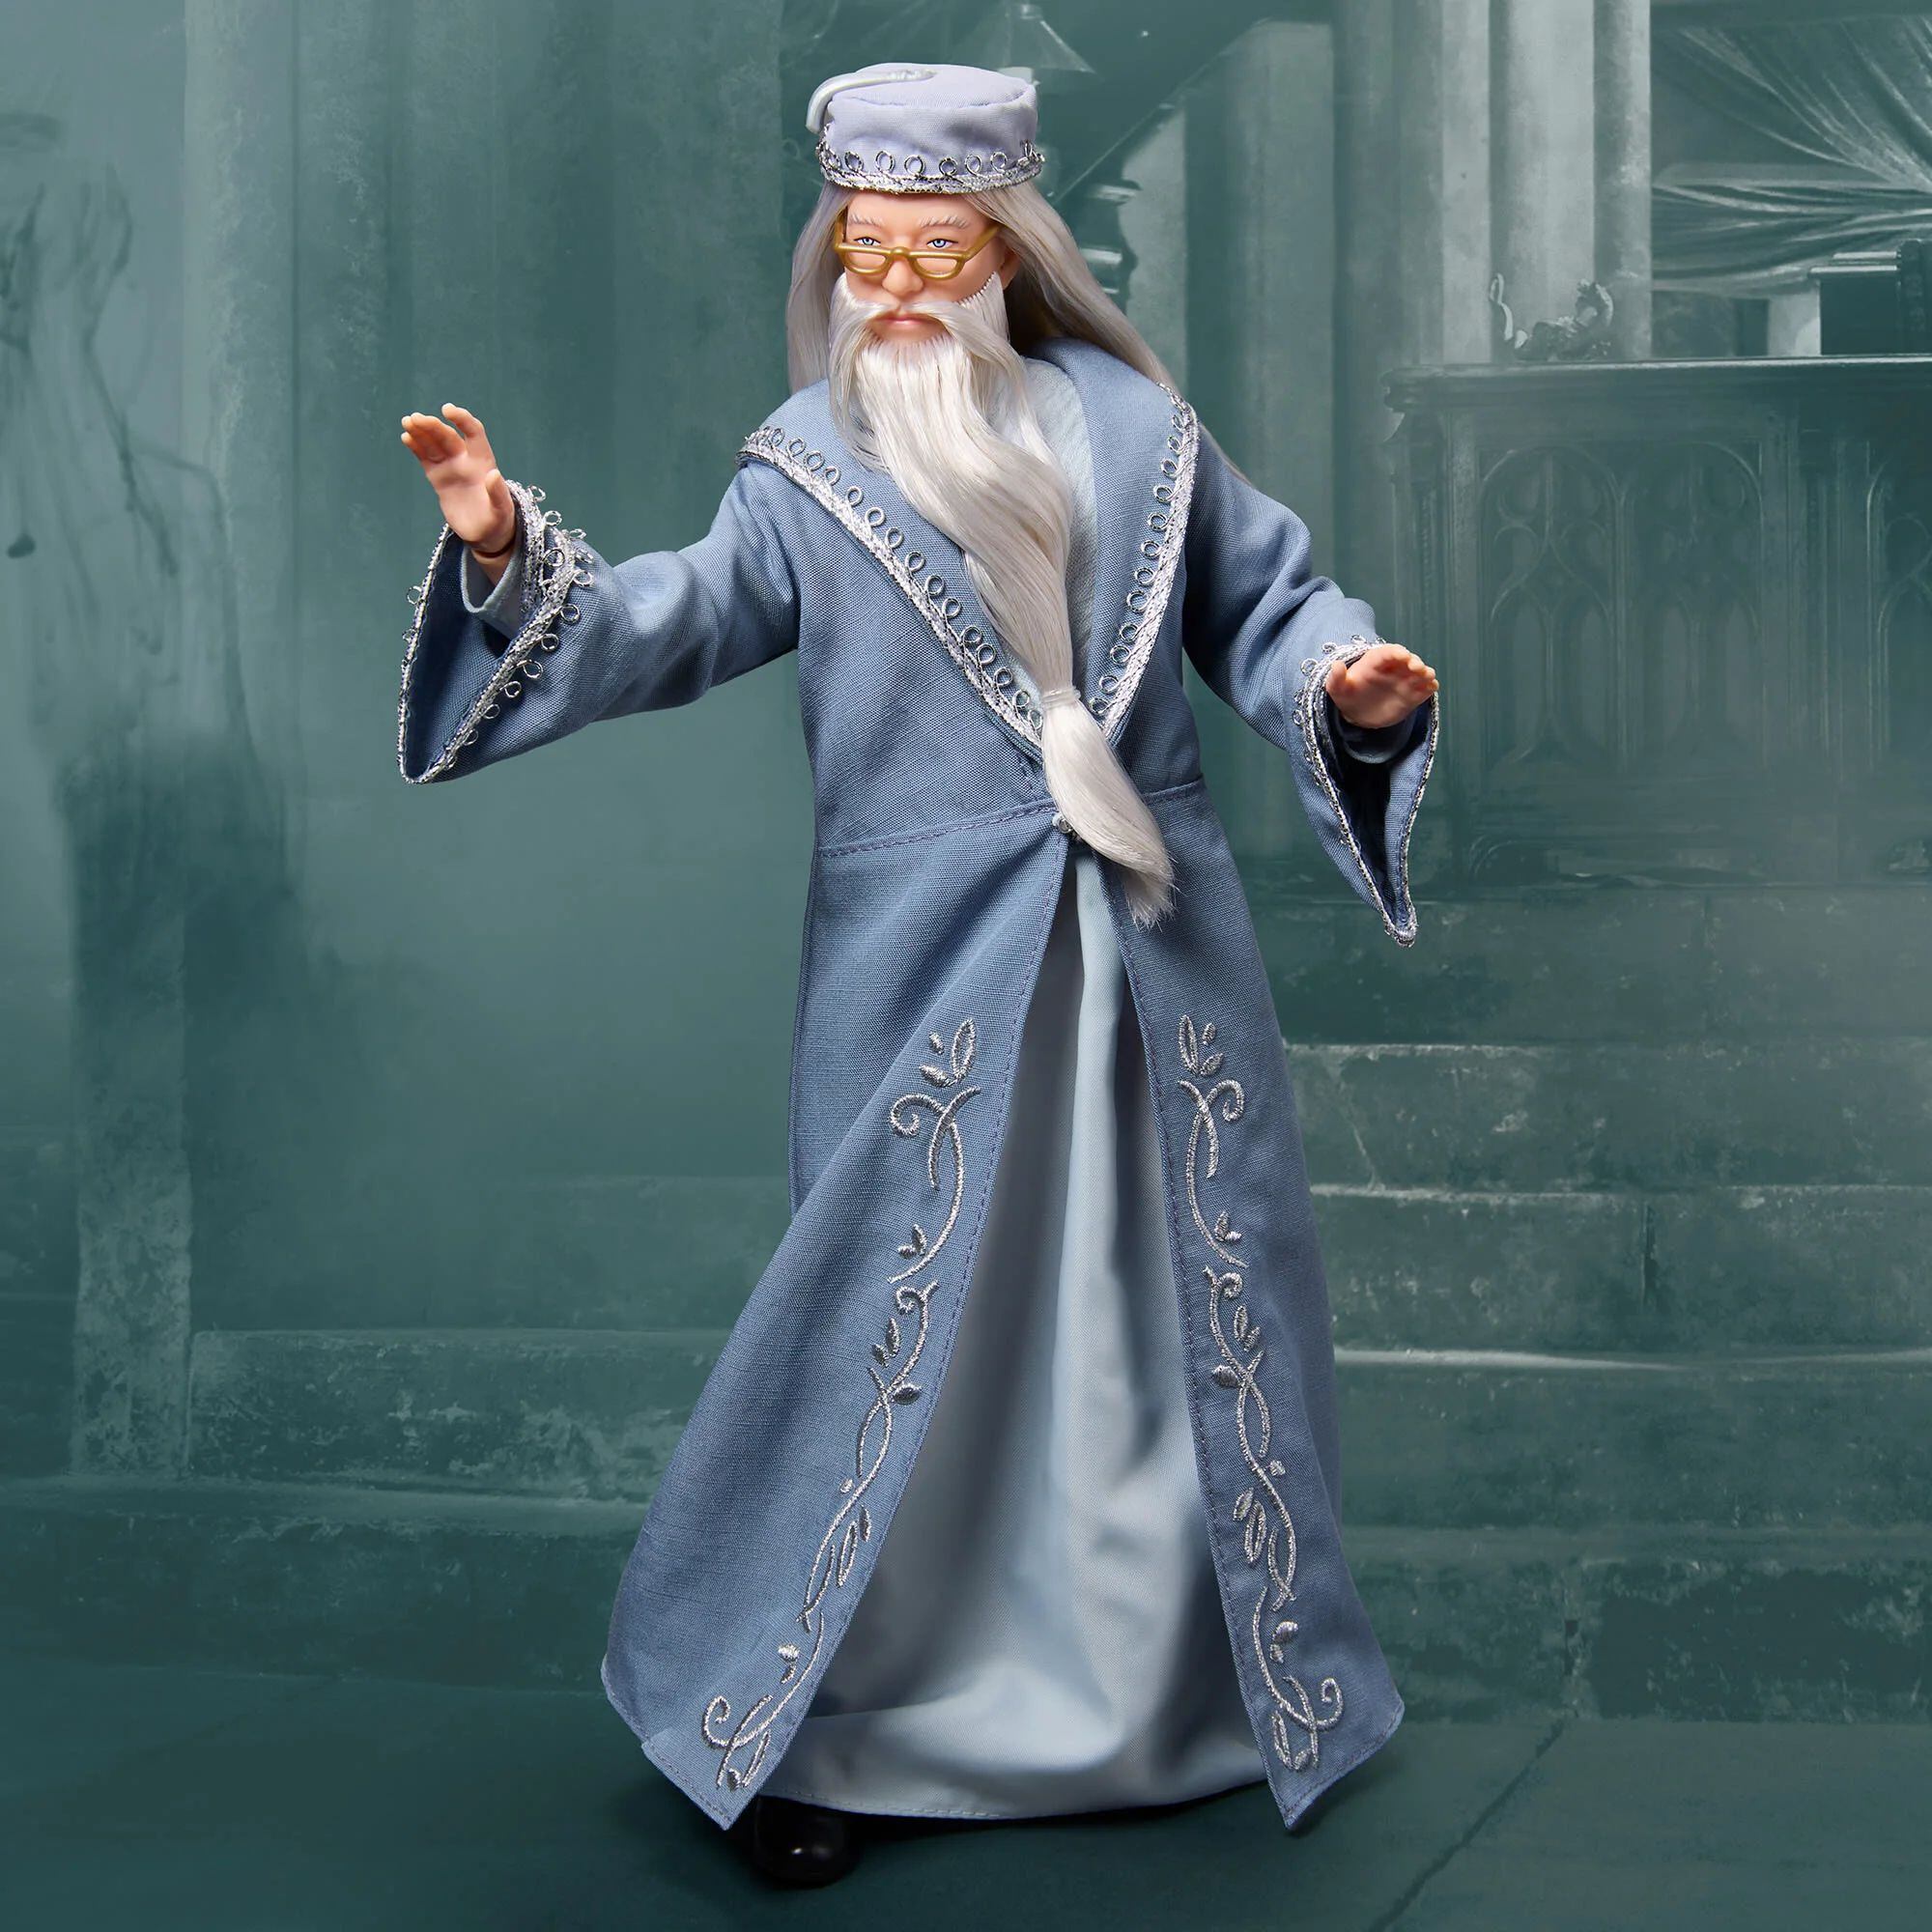 Precio del muñeco de Albus Dumbledore en Mattel que cualquier fan de Harry Potter quisiera tener